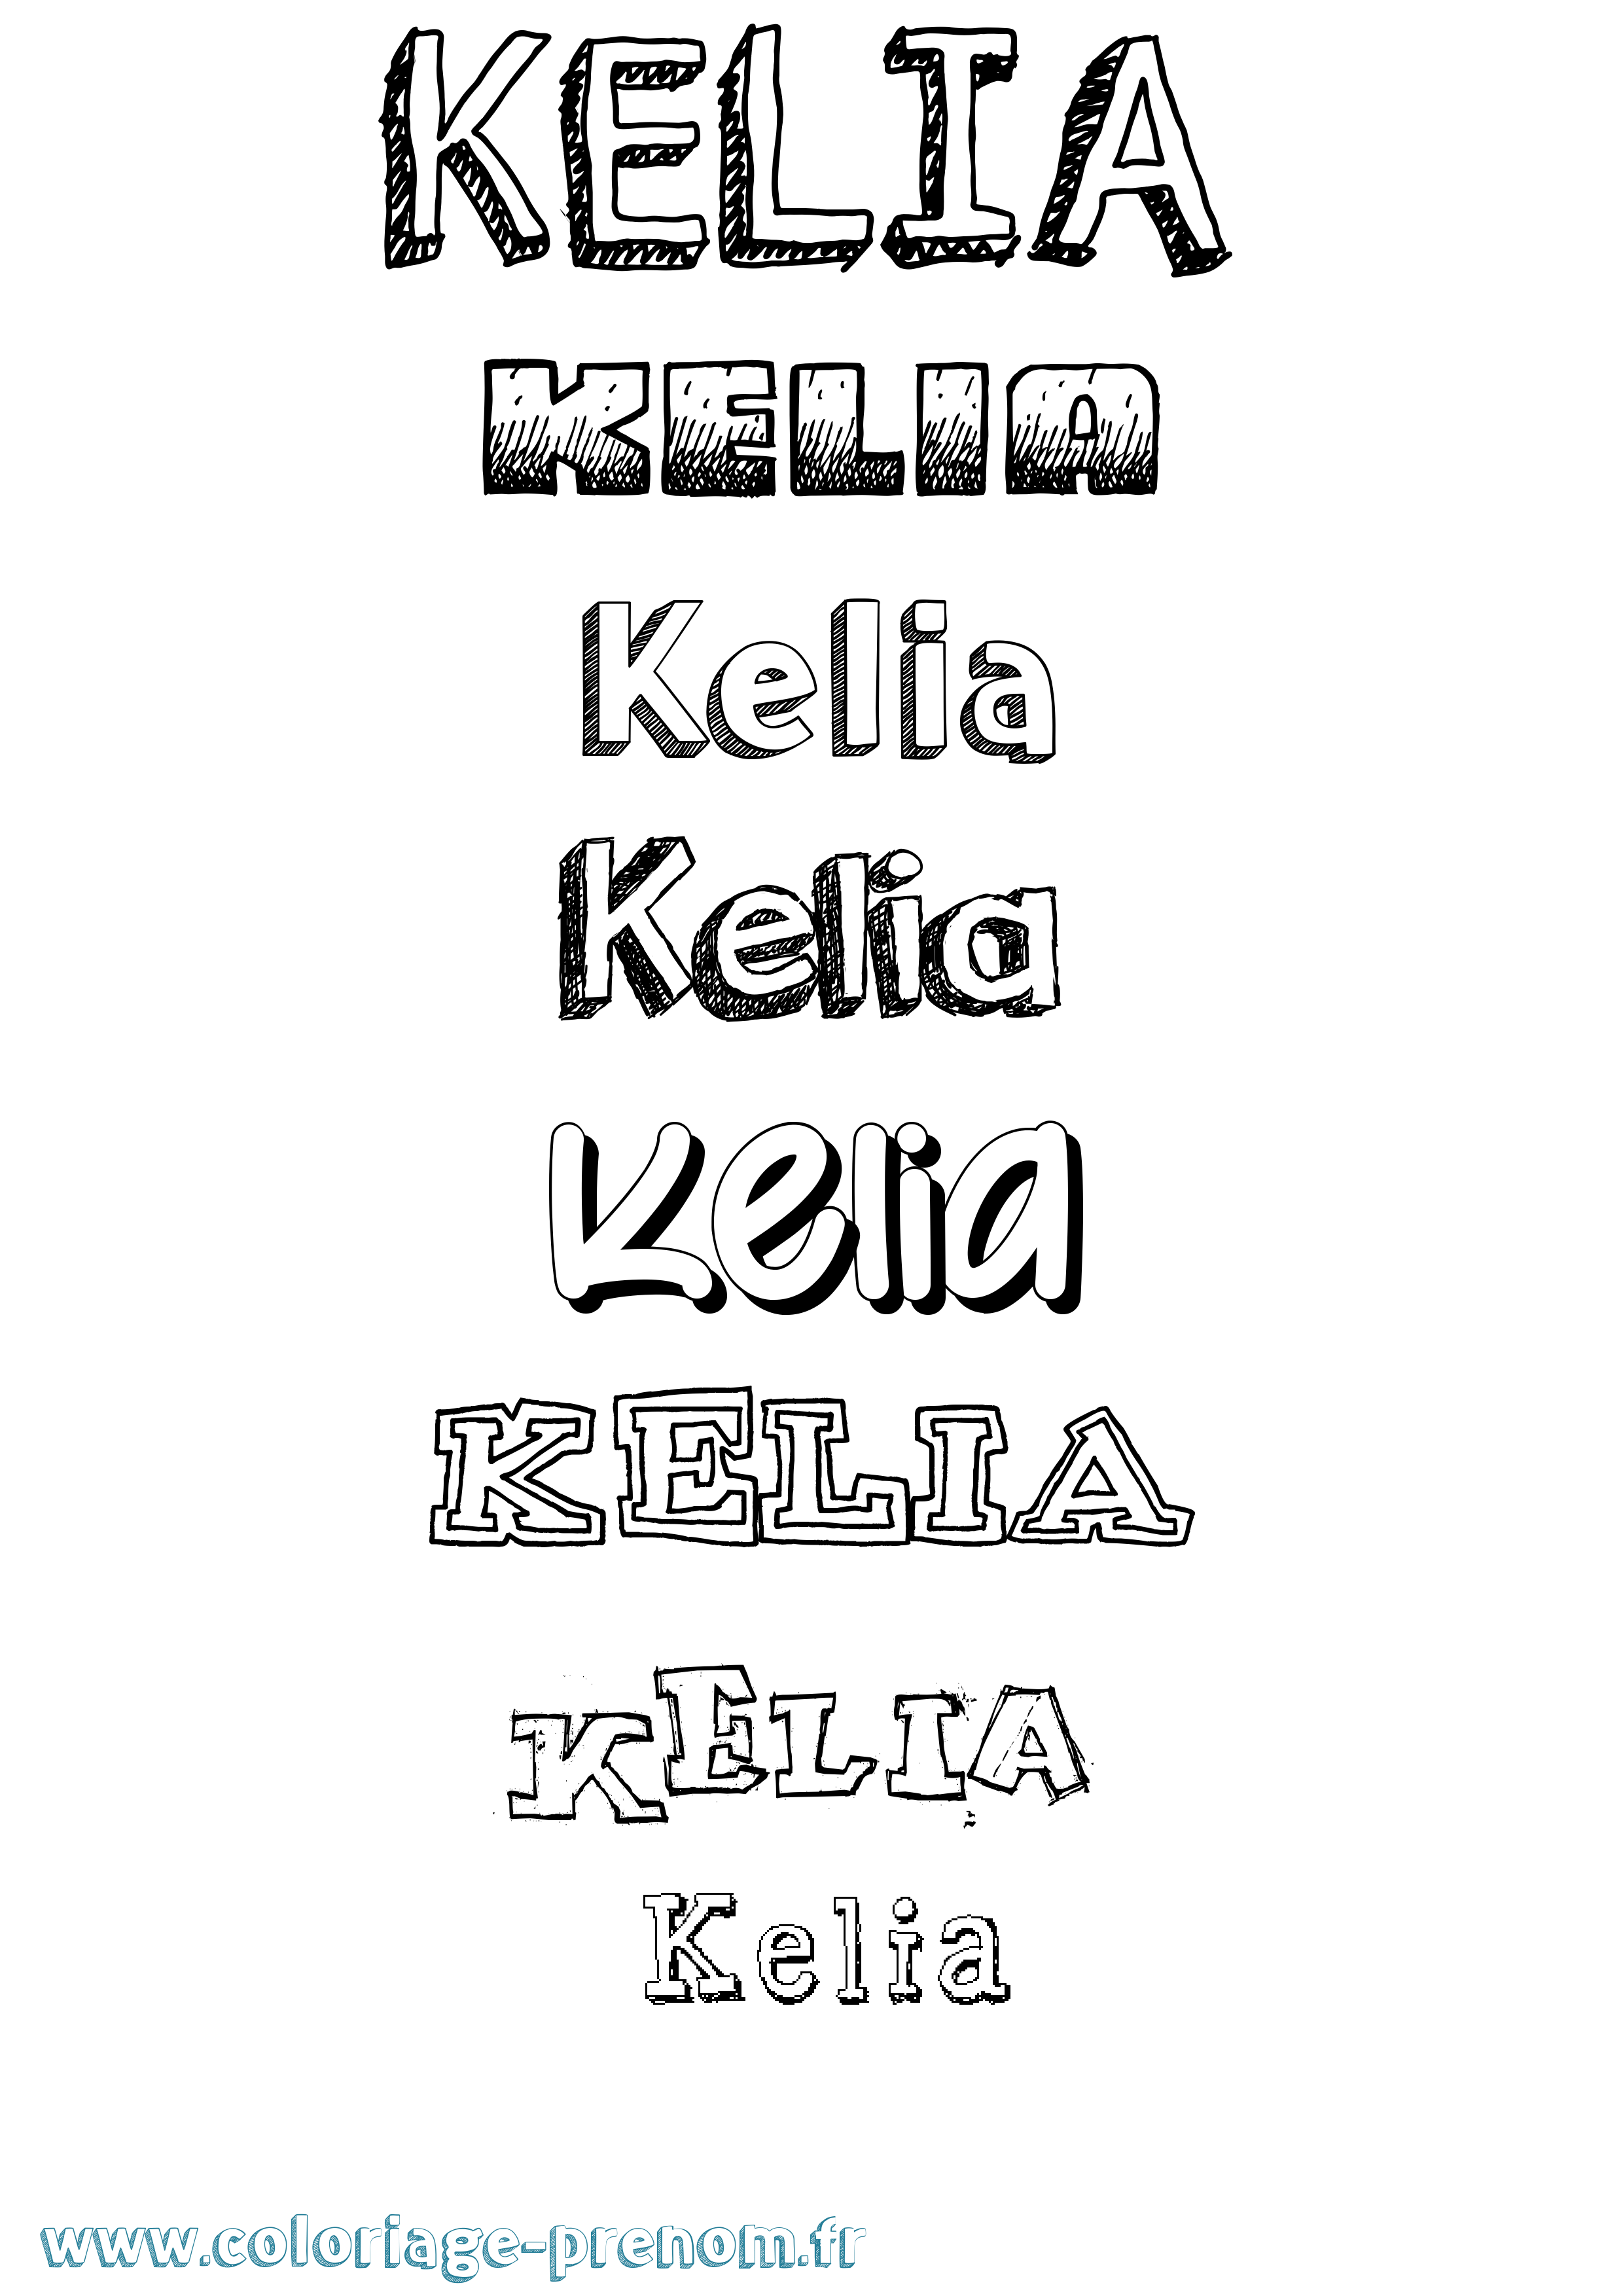 Coloriage prénom Kelia Dessiné